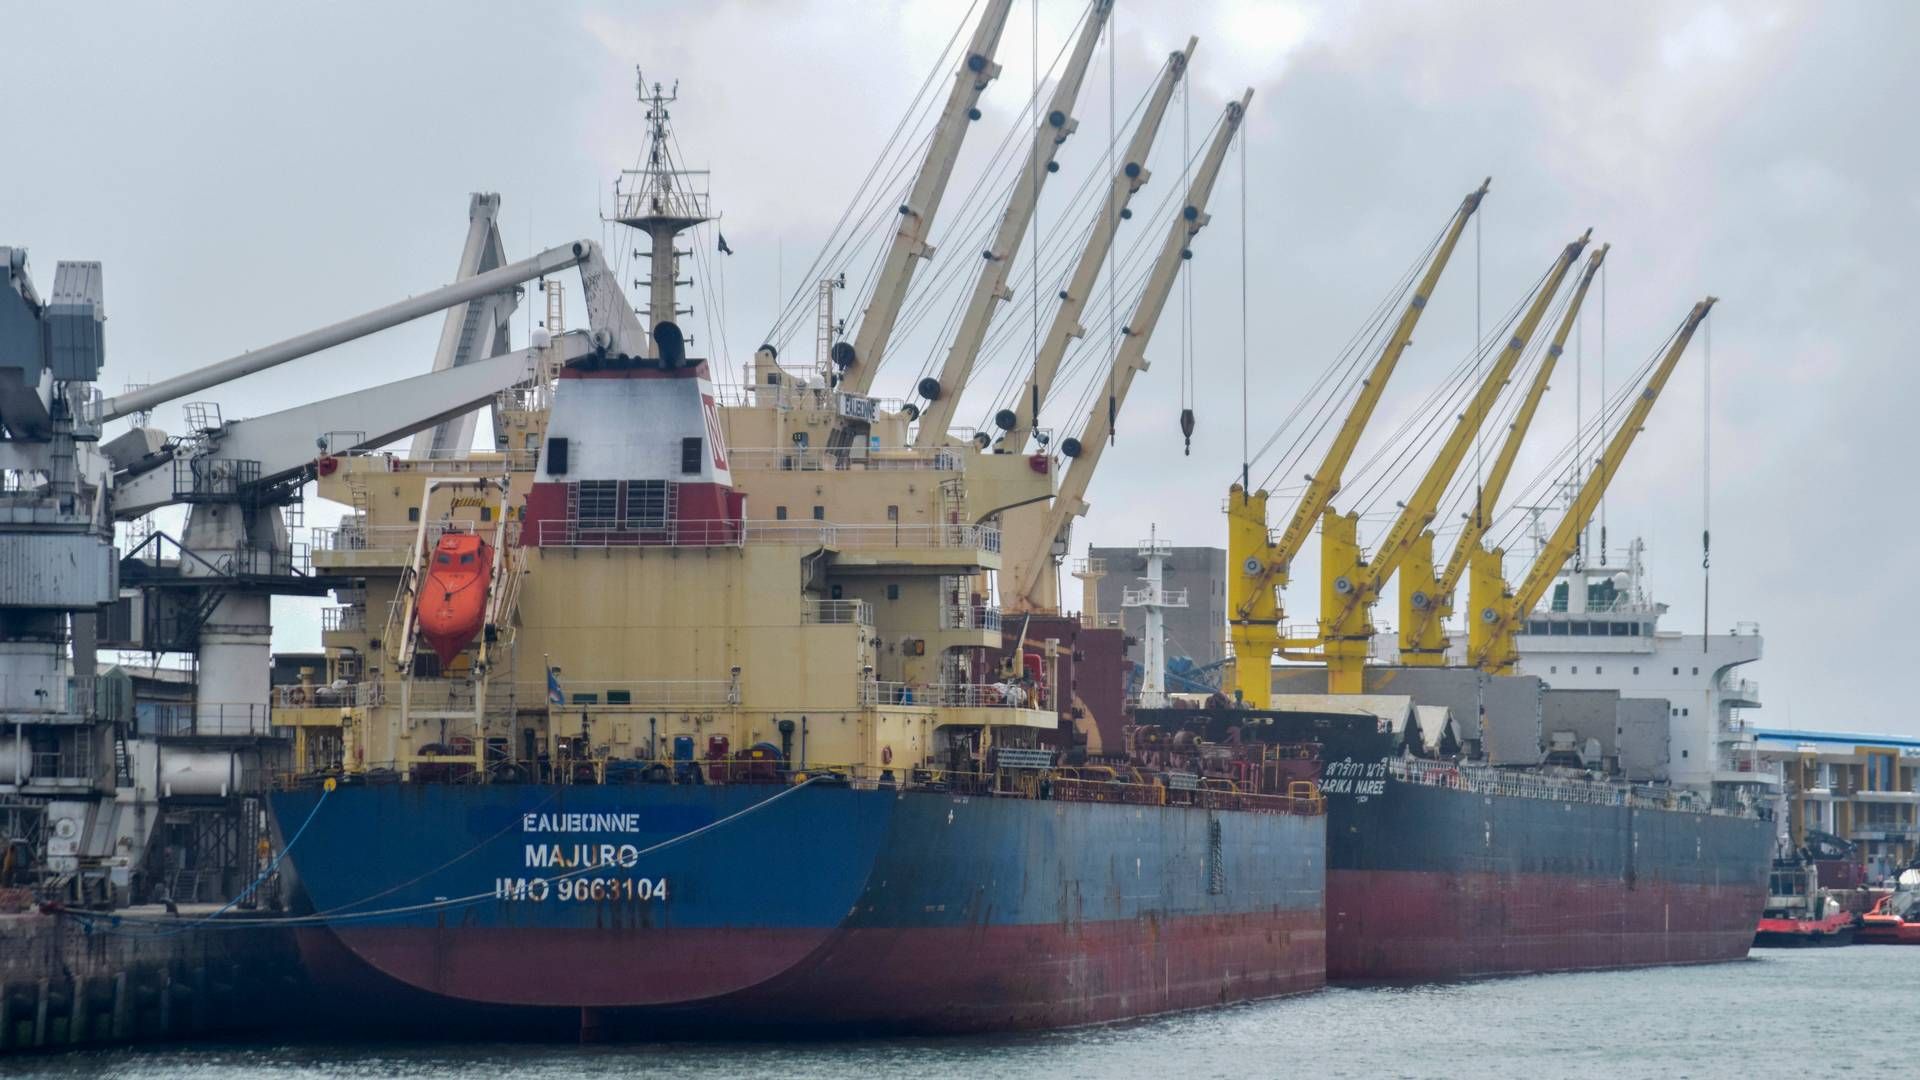 Tørlast- tank- og kemikalierederierne har lagt markant færre ordrer på grønne skibe hos værfterne end container- og gasrederierne. | Foto: Gideon Maundu/AP/Ritzau Scanpix